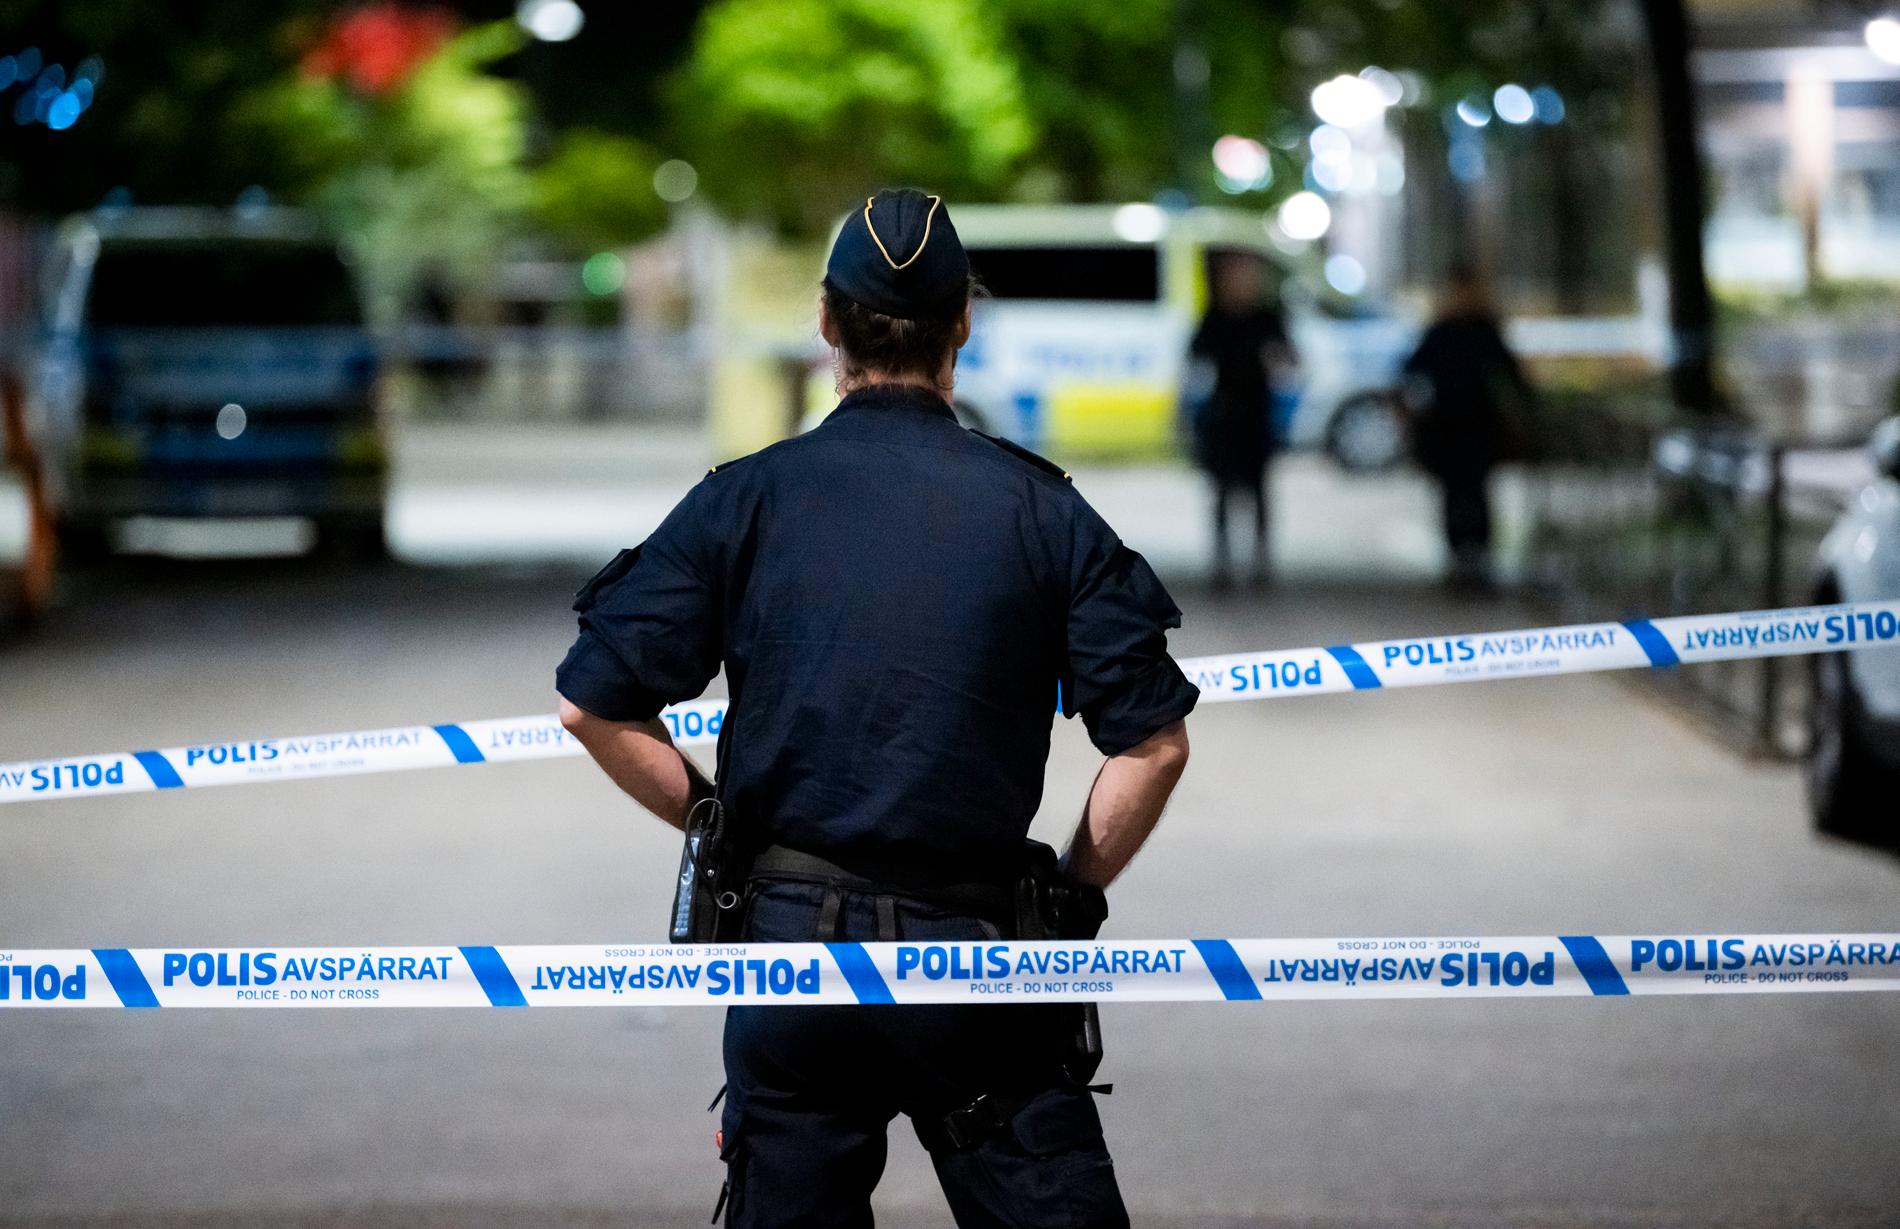 Polisen har fått in flera vittnesuppgifter om händelsen på Möllevången, men än är ingen misstänkt gripen. 